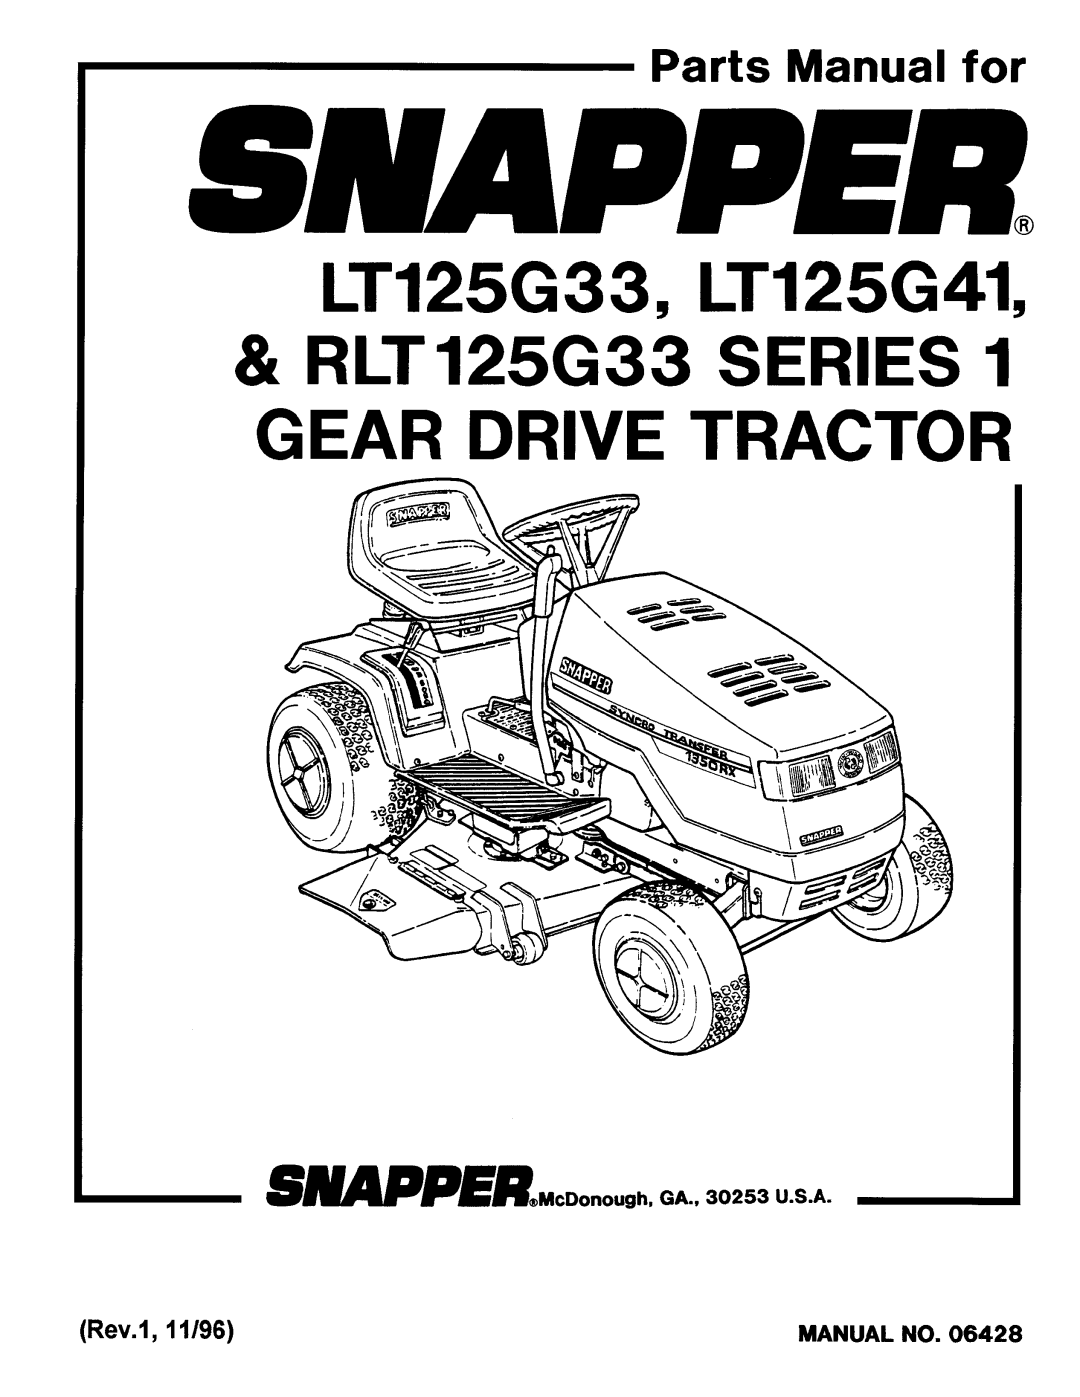 Snapper LT125G33, LT125G41, RLT 125G33 manual 